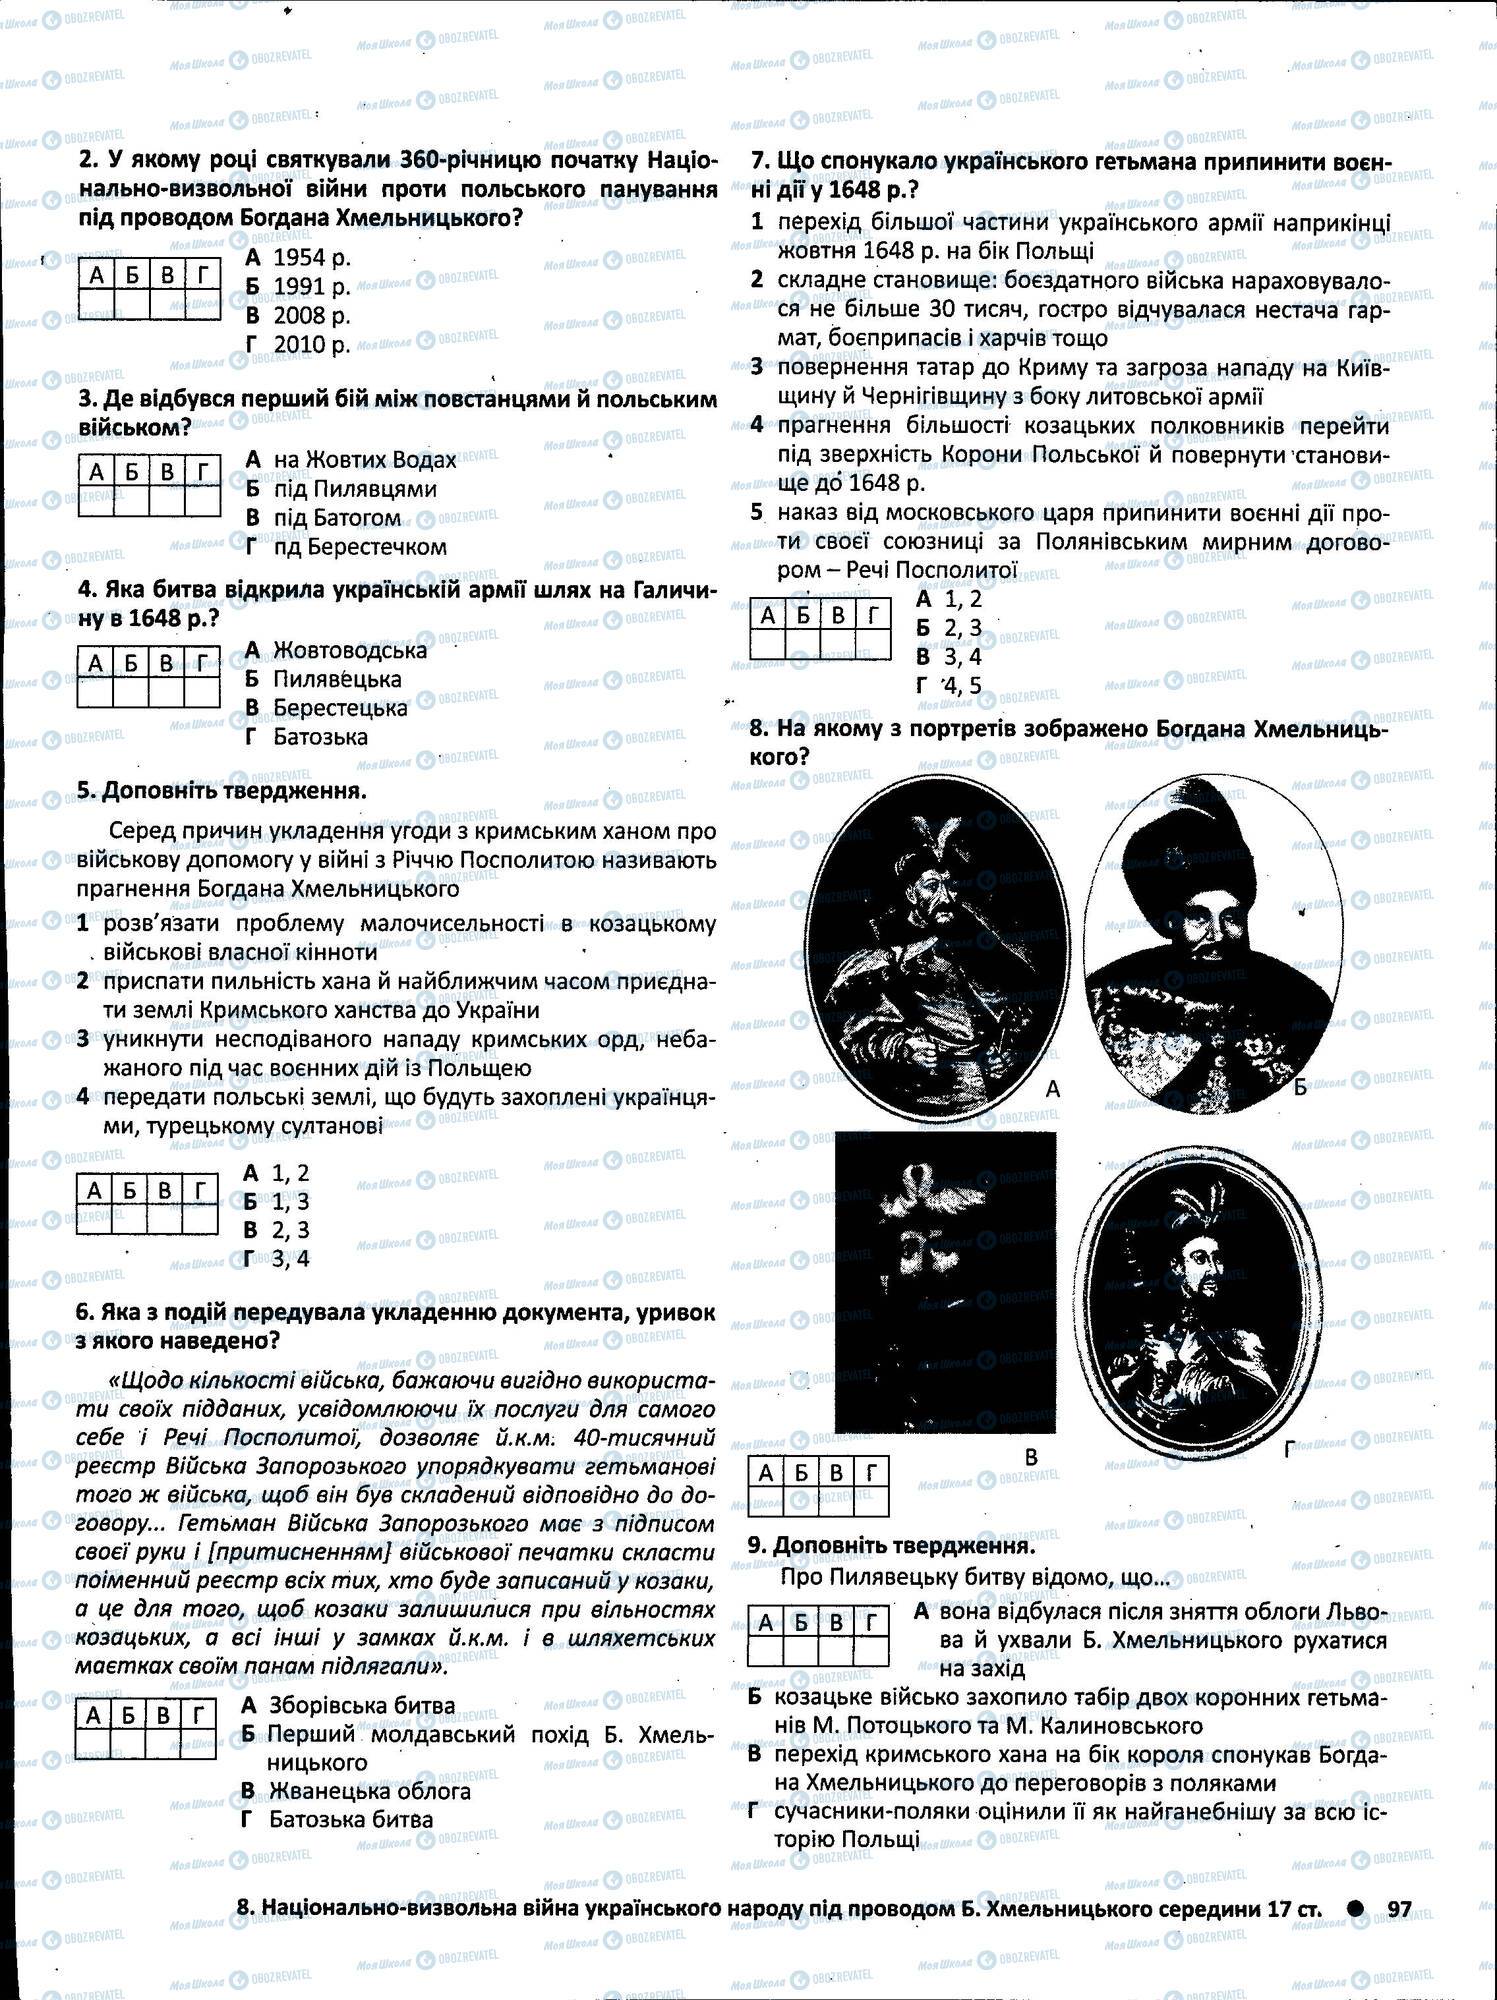 ЗНО История Украины 11 класс страница 097